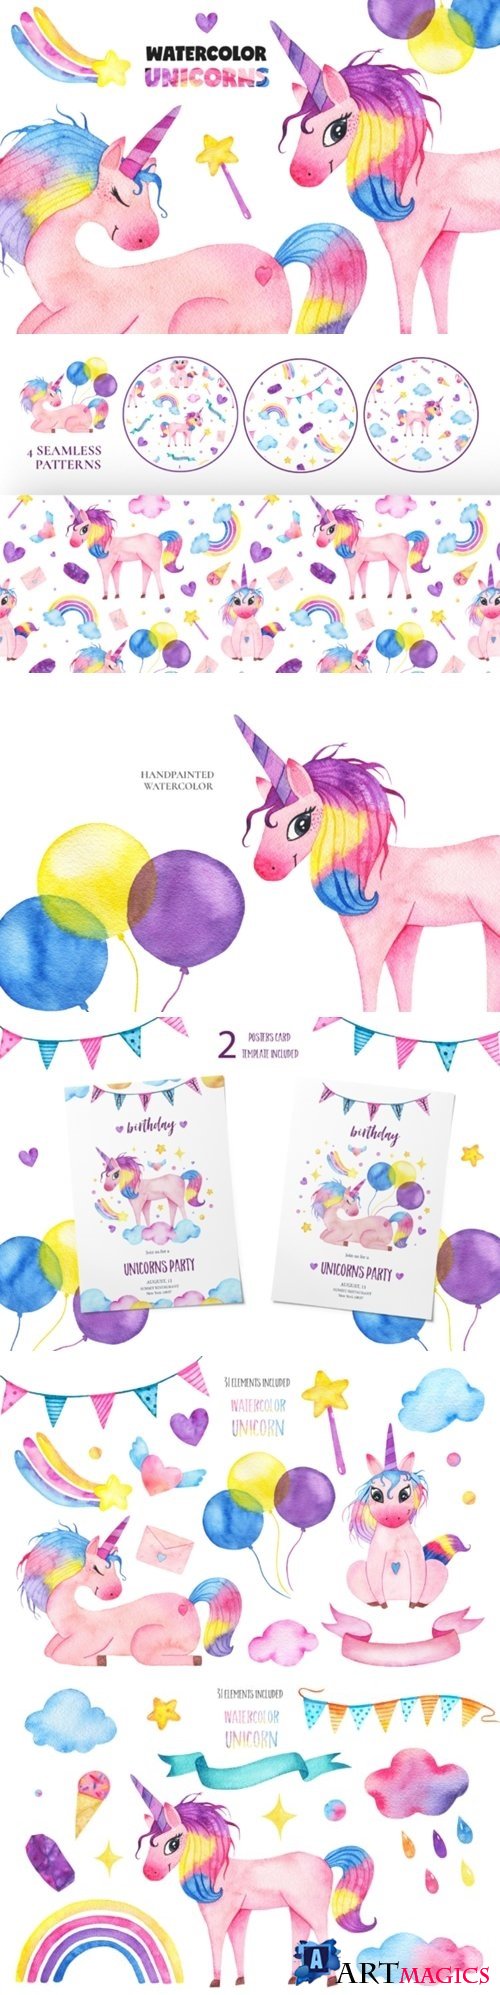 Cute watercolor unicorns collection - 3585531